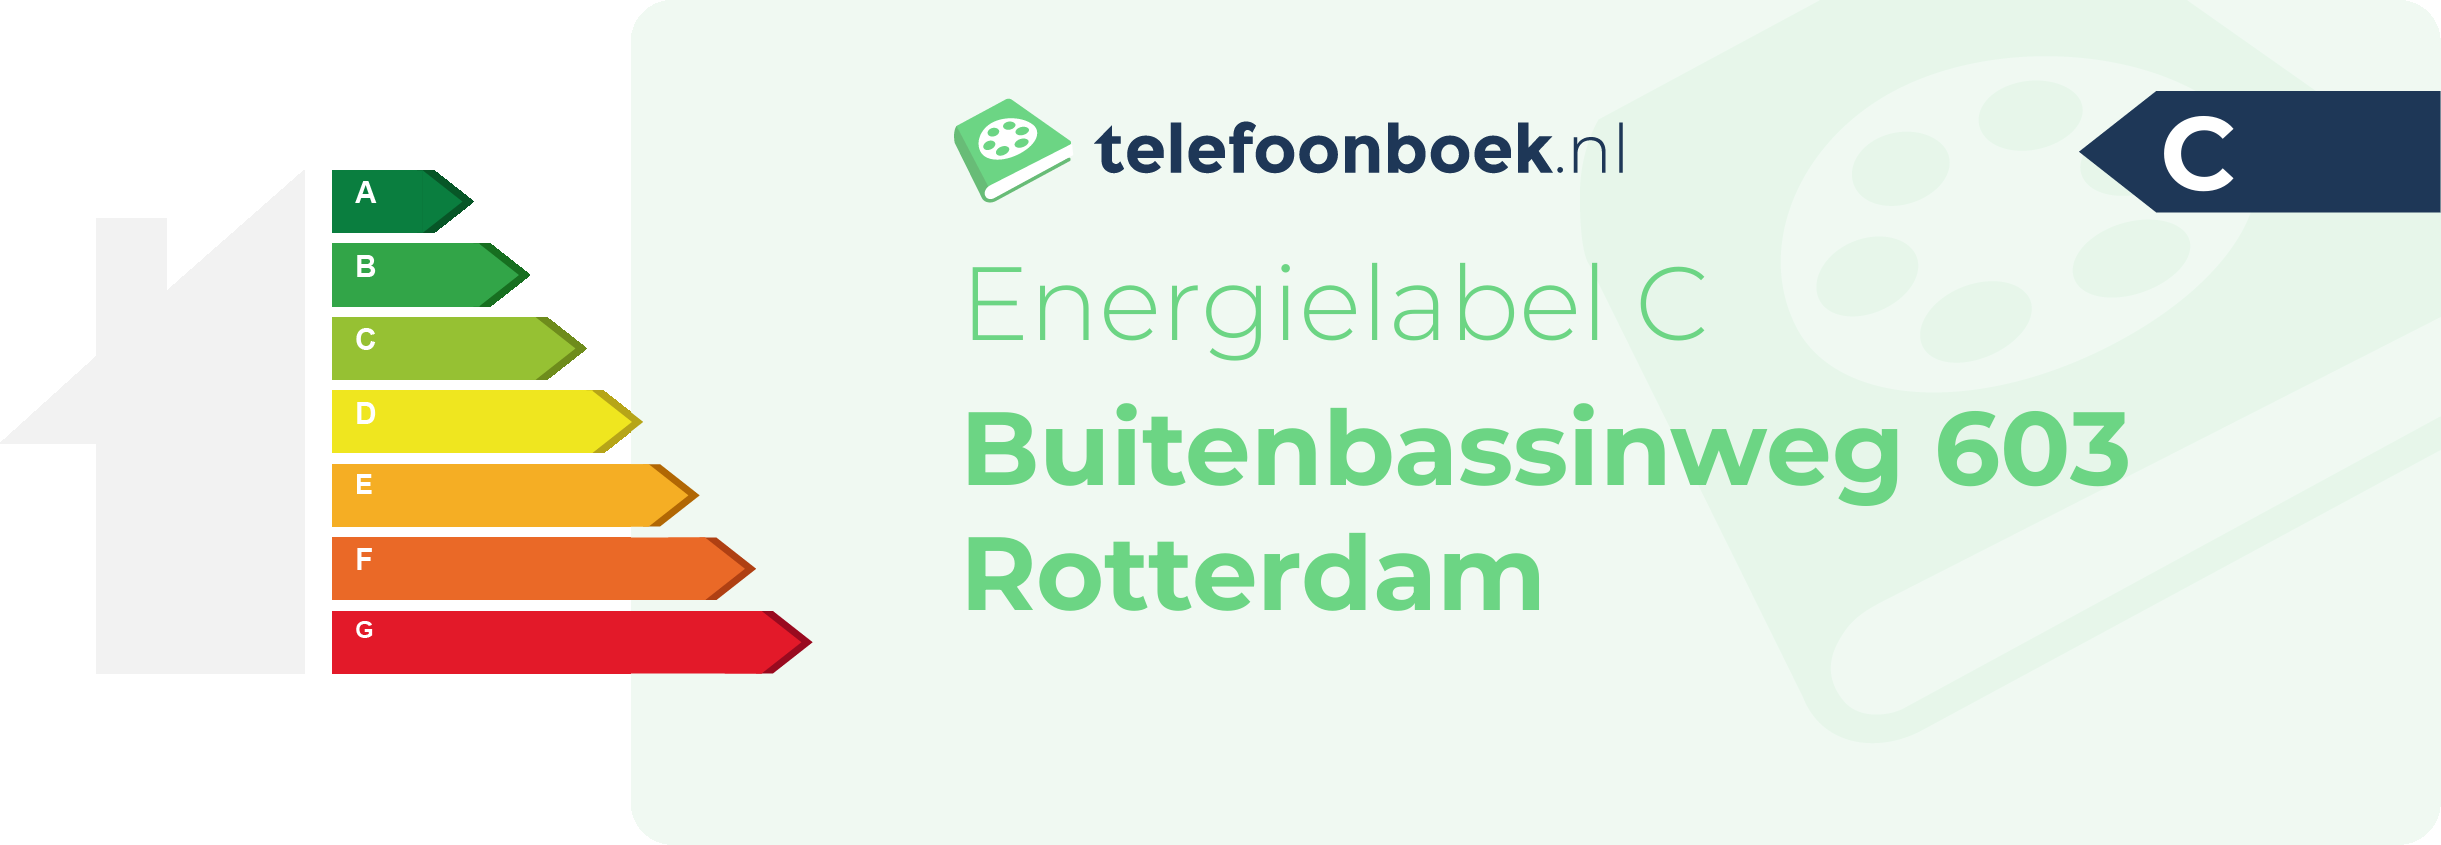 Energielabel Buitenbassinweg 603 Rotterdam